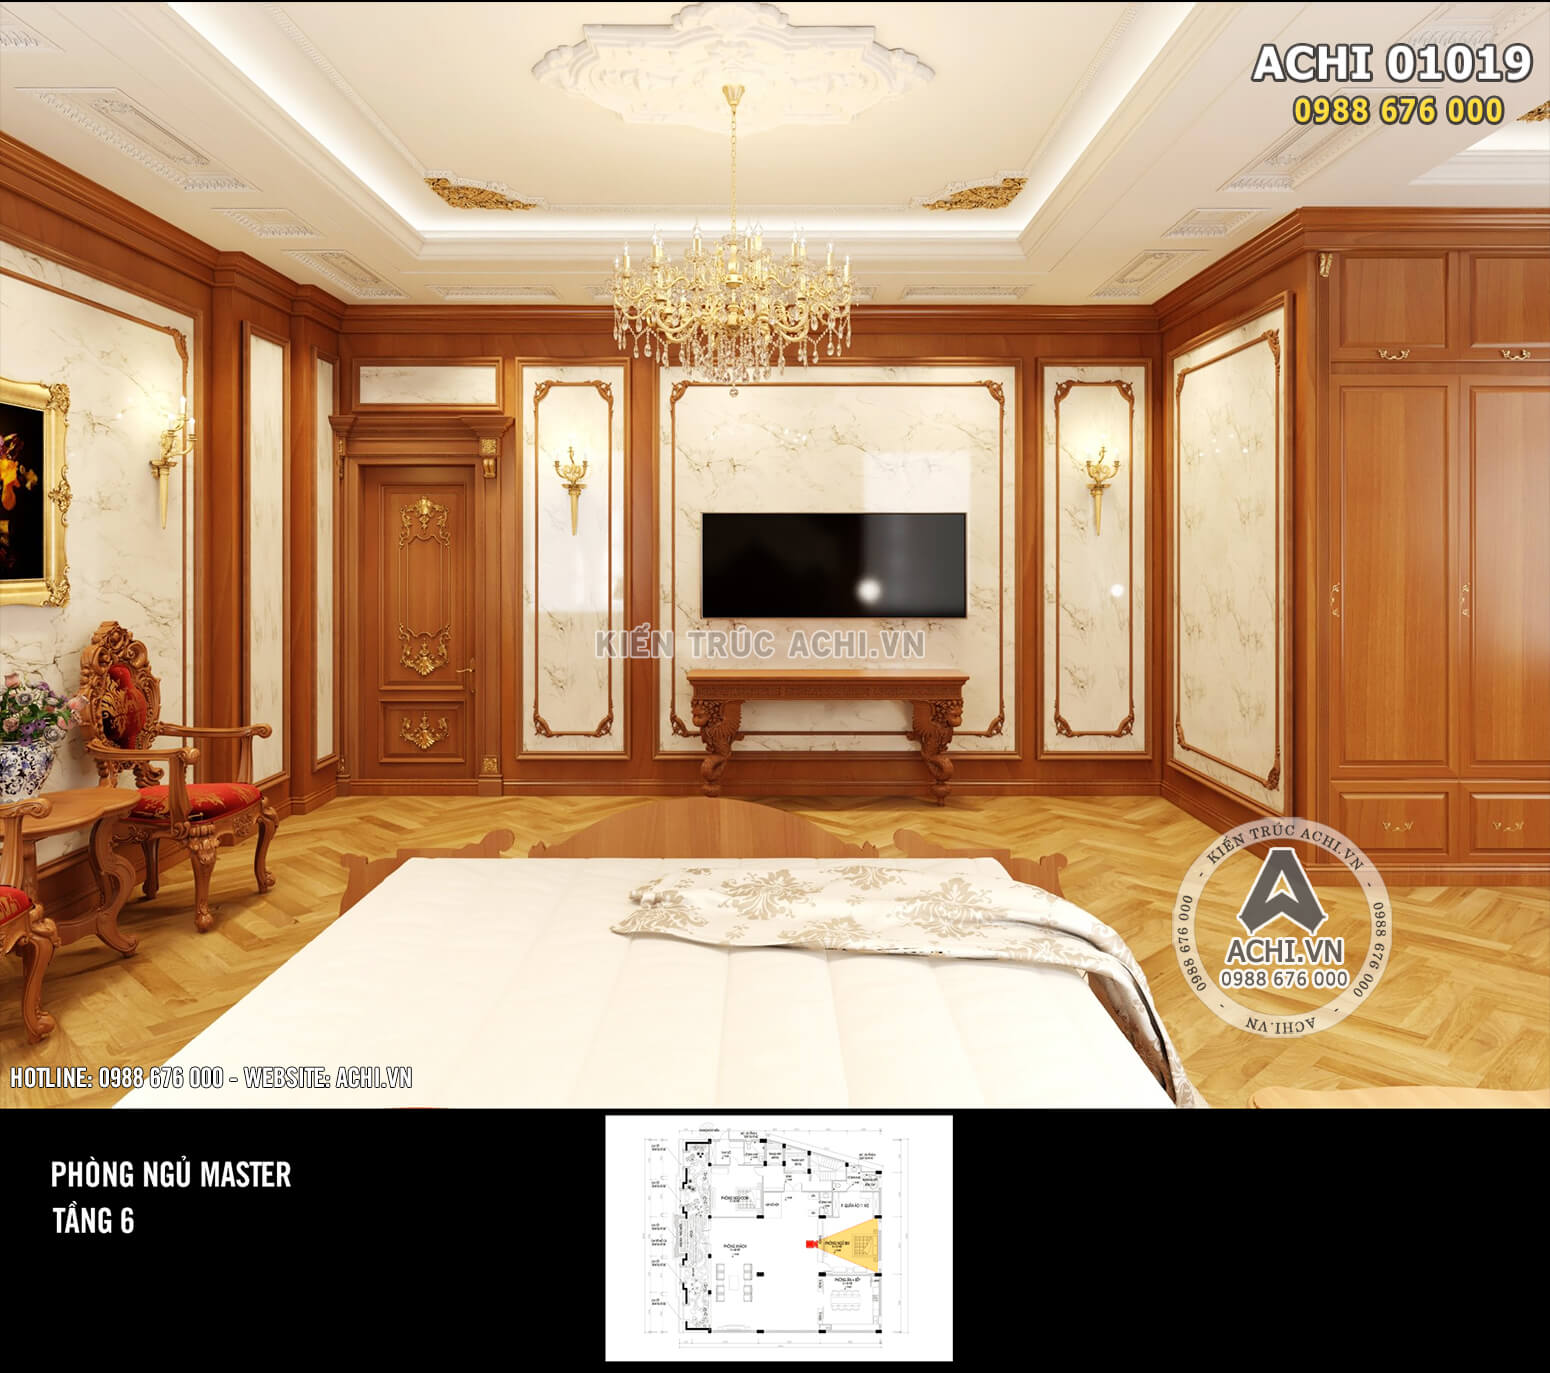 Hình ảnh: Thiết kế nội thất tân cổ điển đẹp bằng gỗ – ACHI 01019